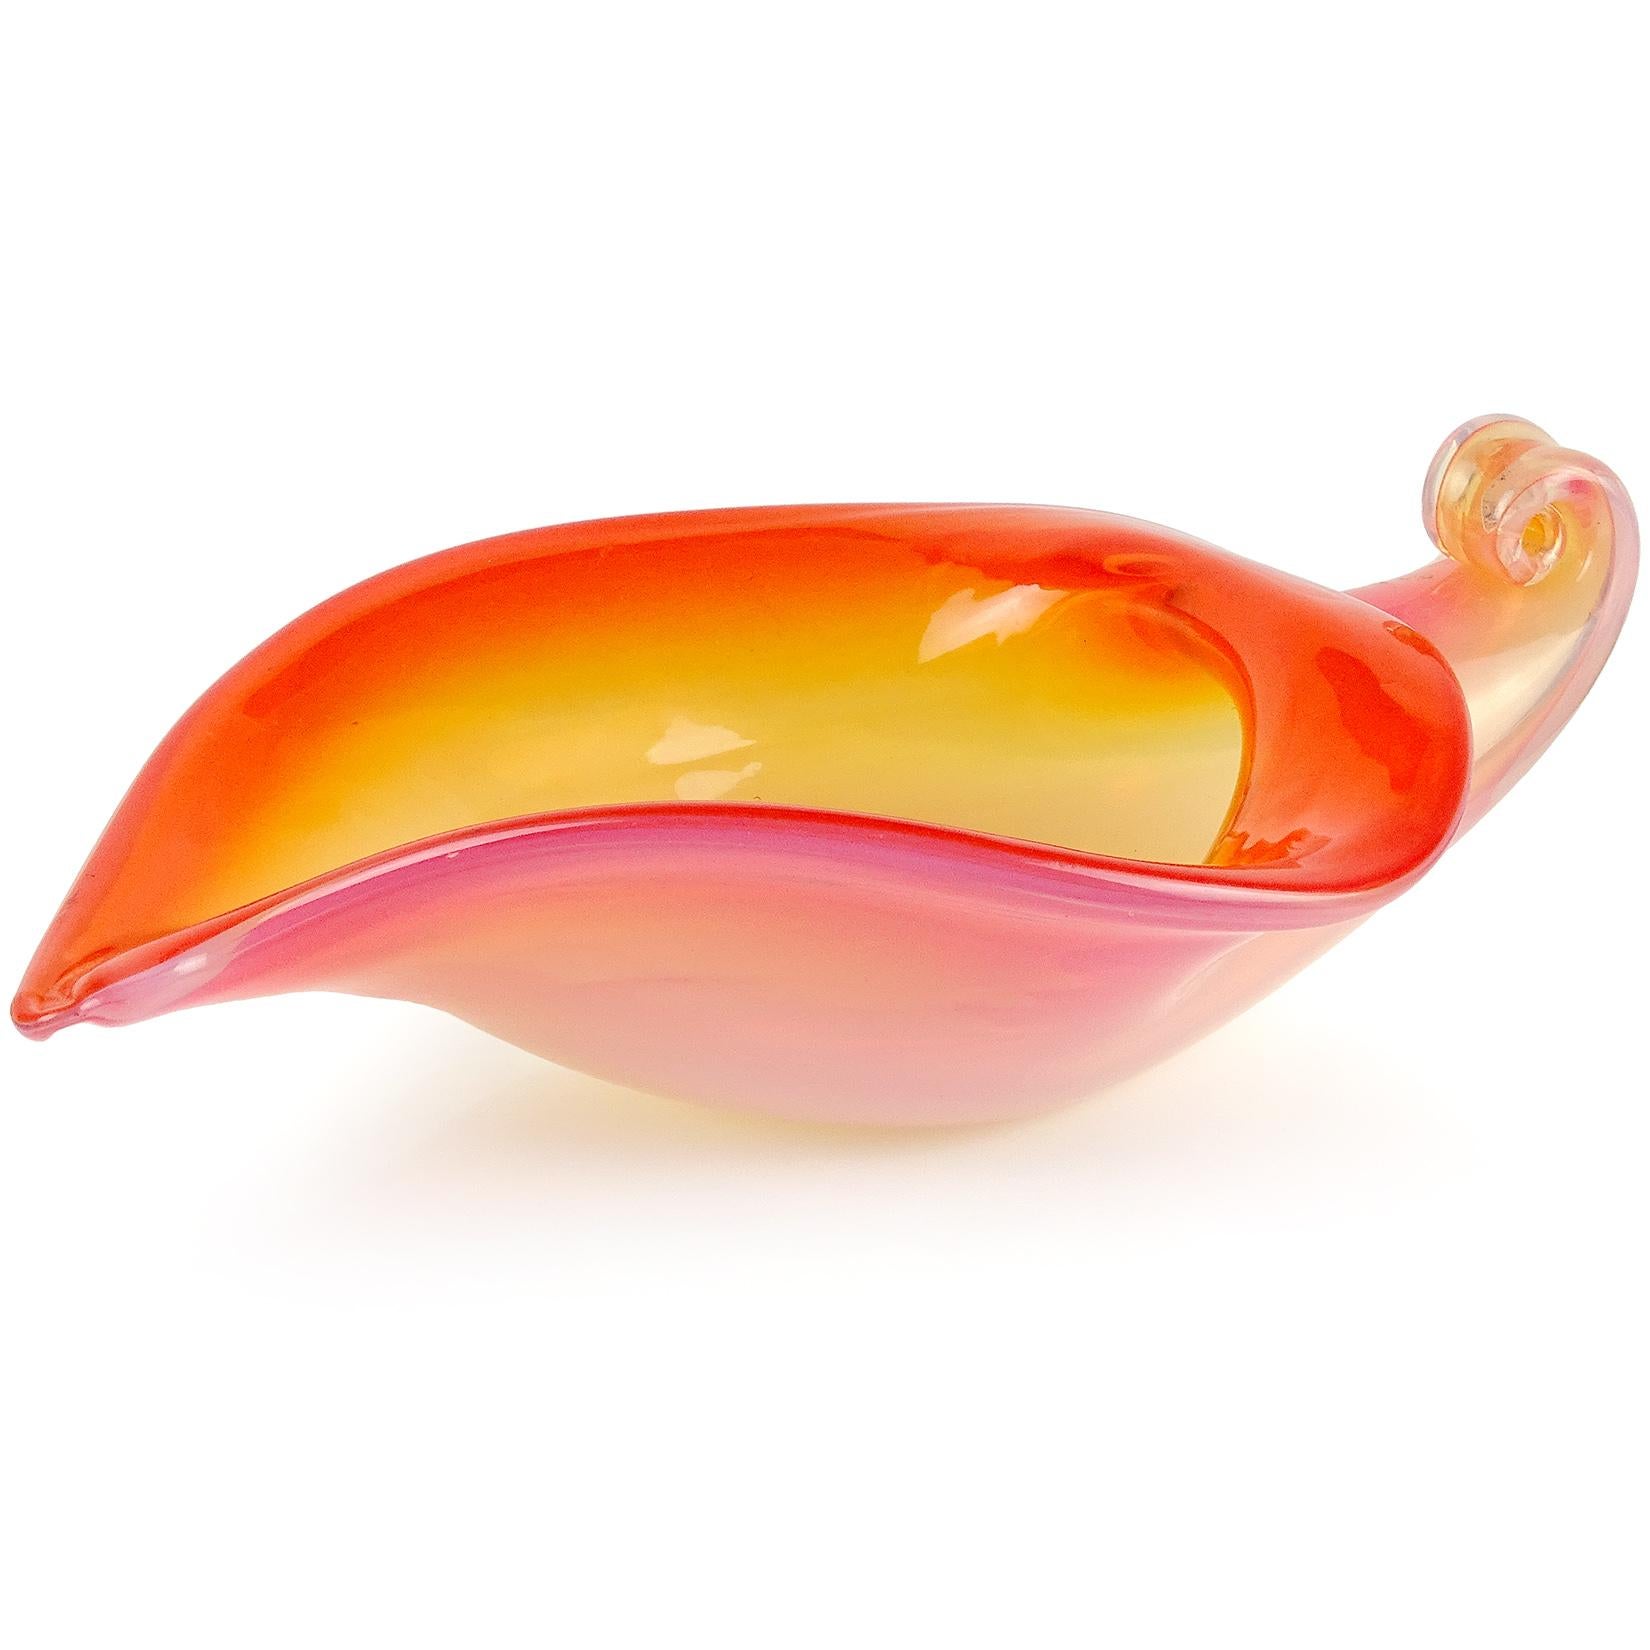 Schöne Vintage Murano mundgeblasen Sommerso orange und weiß Opal italienischen Kunstglas Muschel / Horn of plenty Schale. Wird der Firma Fratelli Toso zugeschrieben. Die Schale ist an einem Ende mit einer Schnecke verziert, die als Henkel verwendet